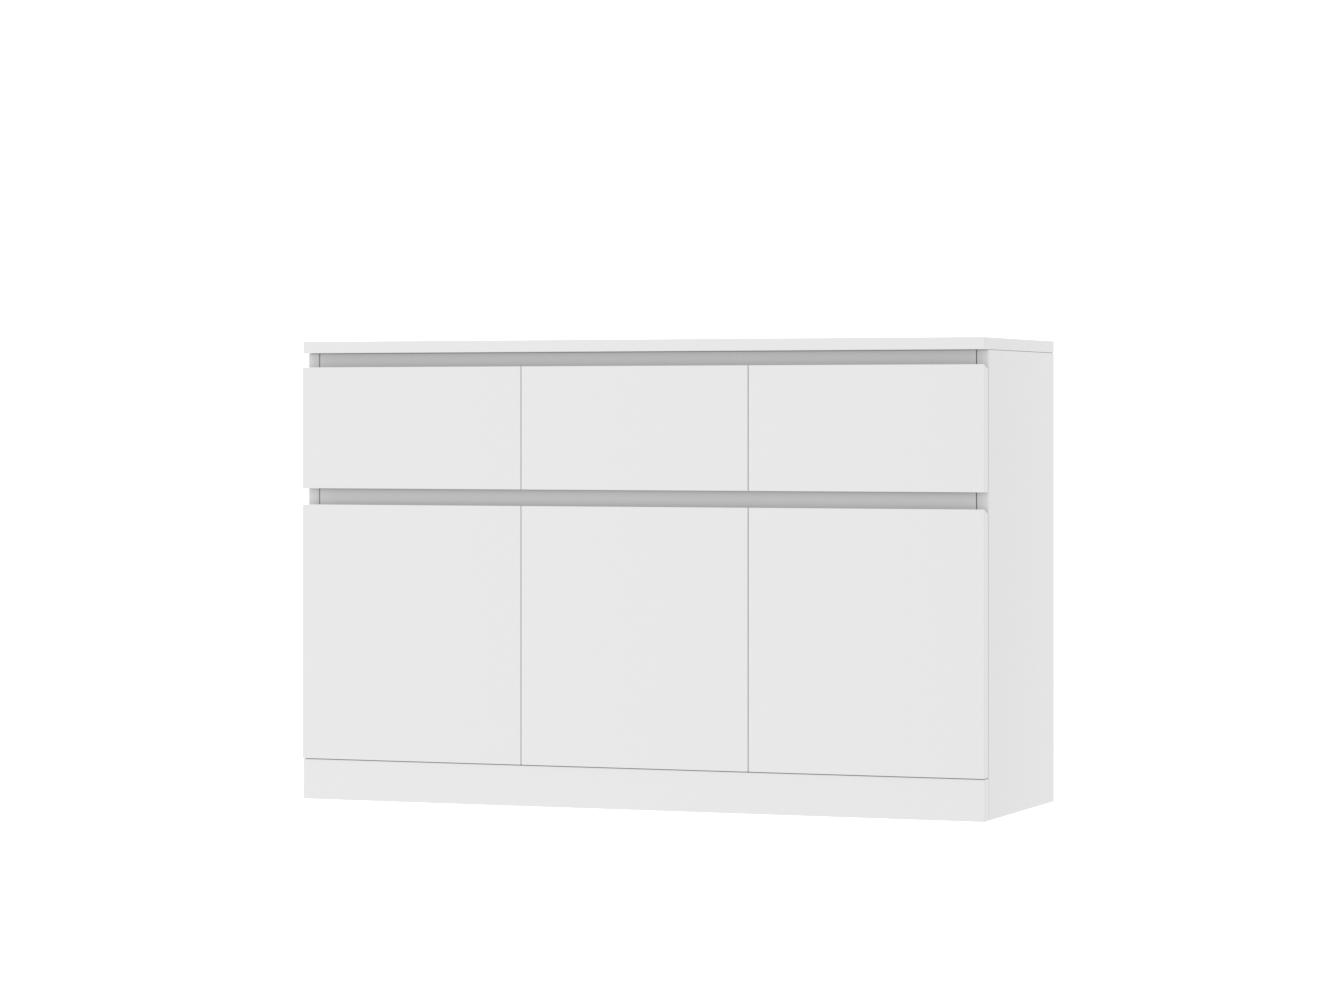 Комод Мальм 24 white ИКЕА (IKEA) изображение товара